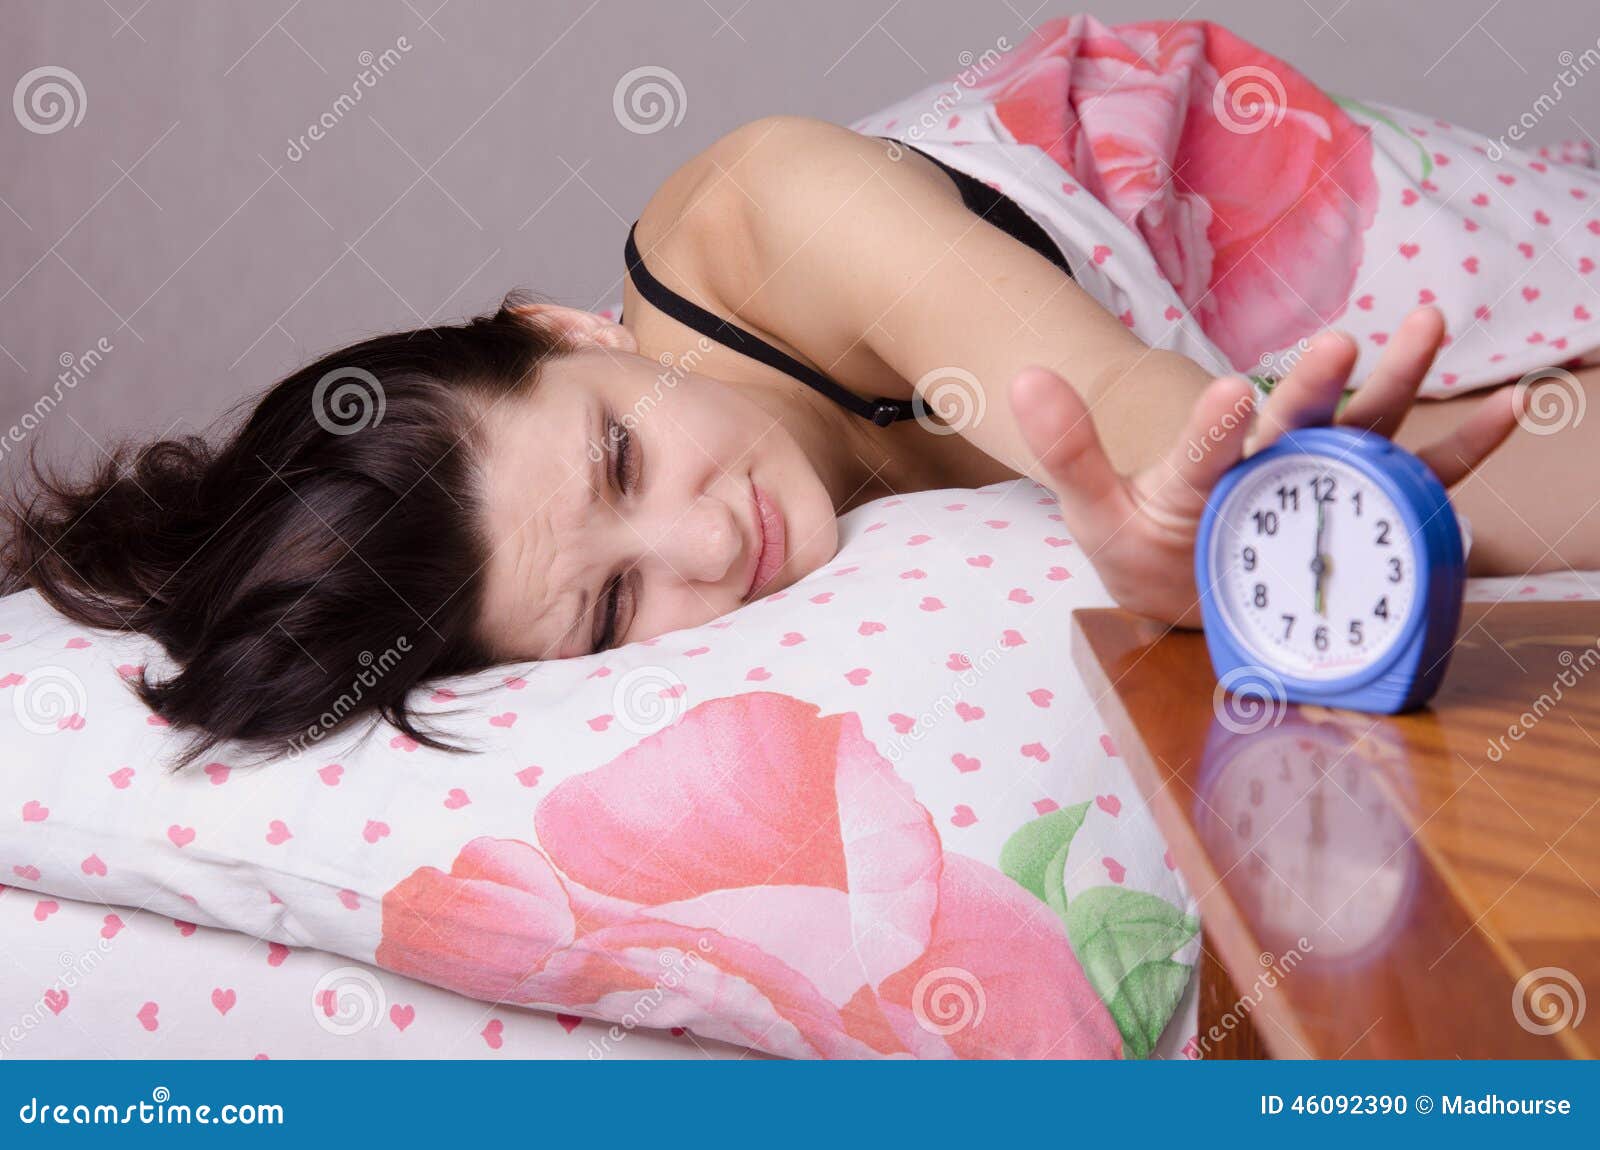 Как проснуться через час. Девушка в постели с будильником. Девушка в кровати с будильником.